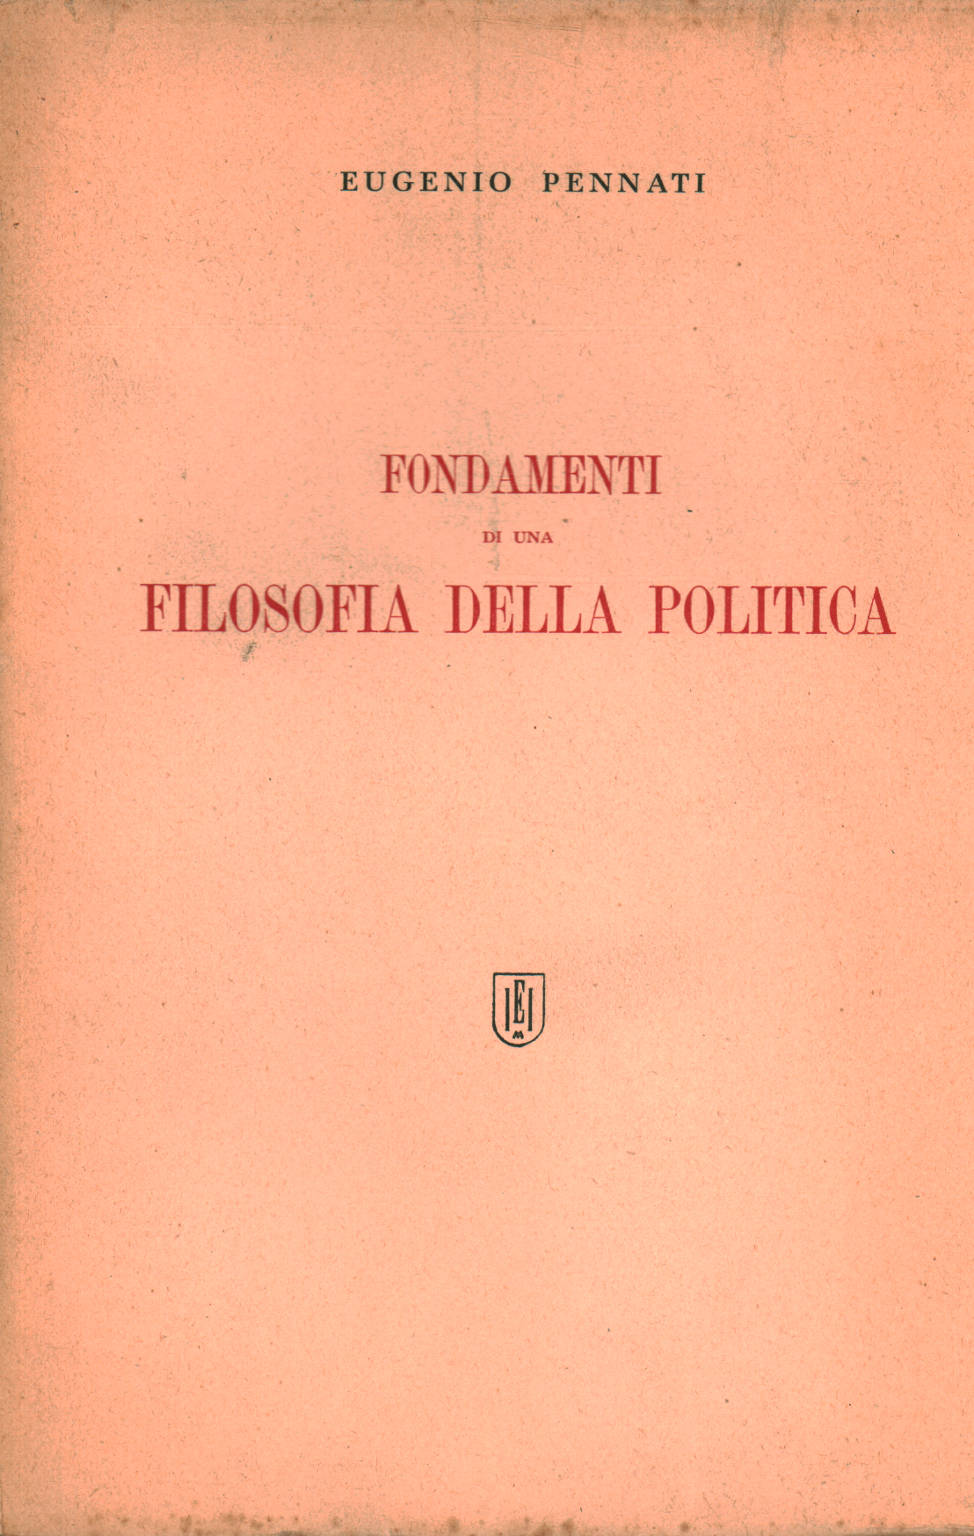 Fondamenti di una filosofia della politica, Eugenio Pennati